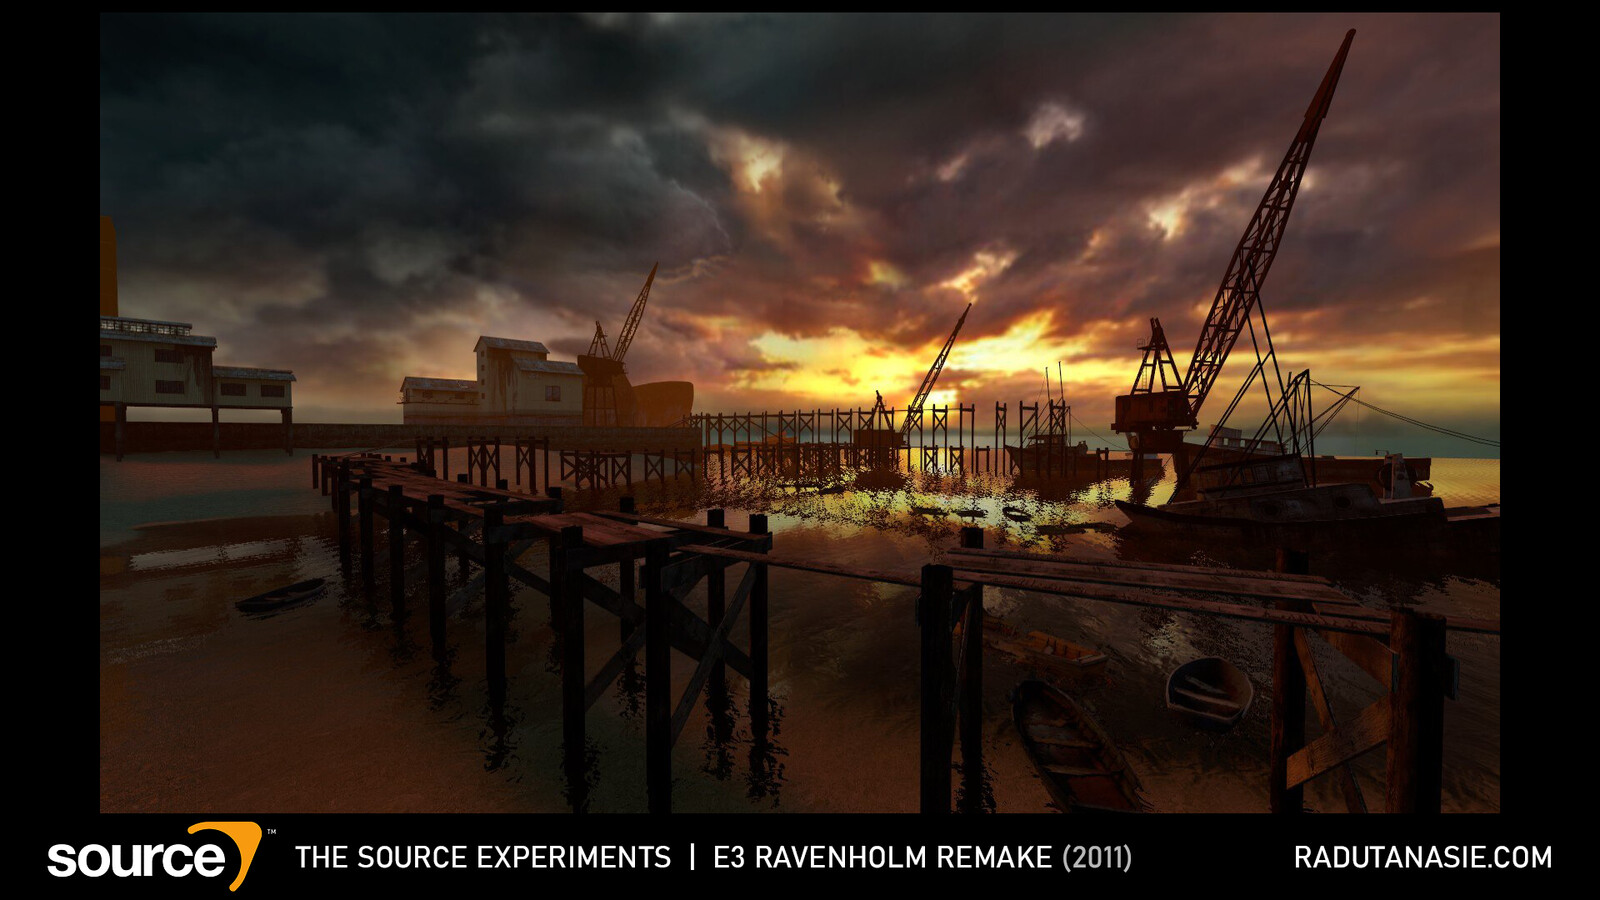 Recreation of the famous E3 Ravenholm docks scene.